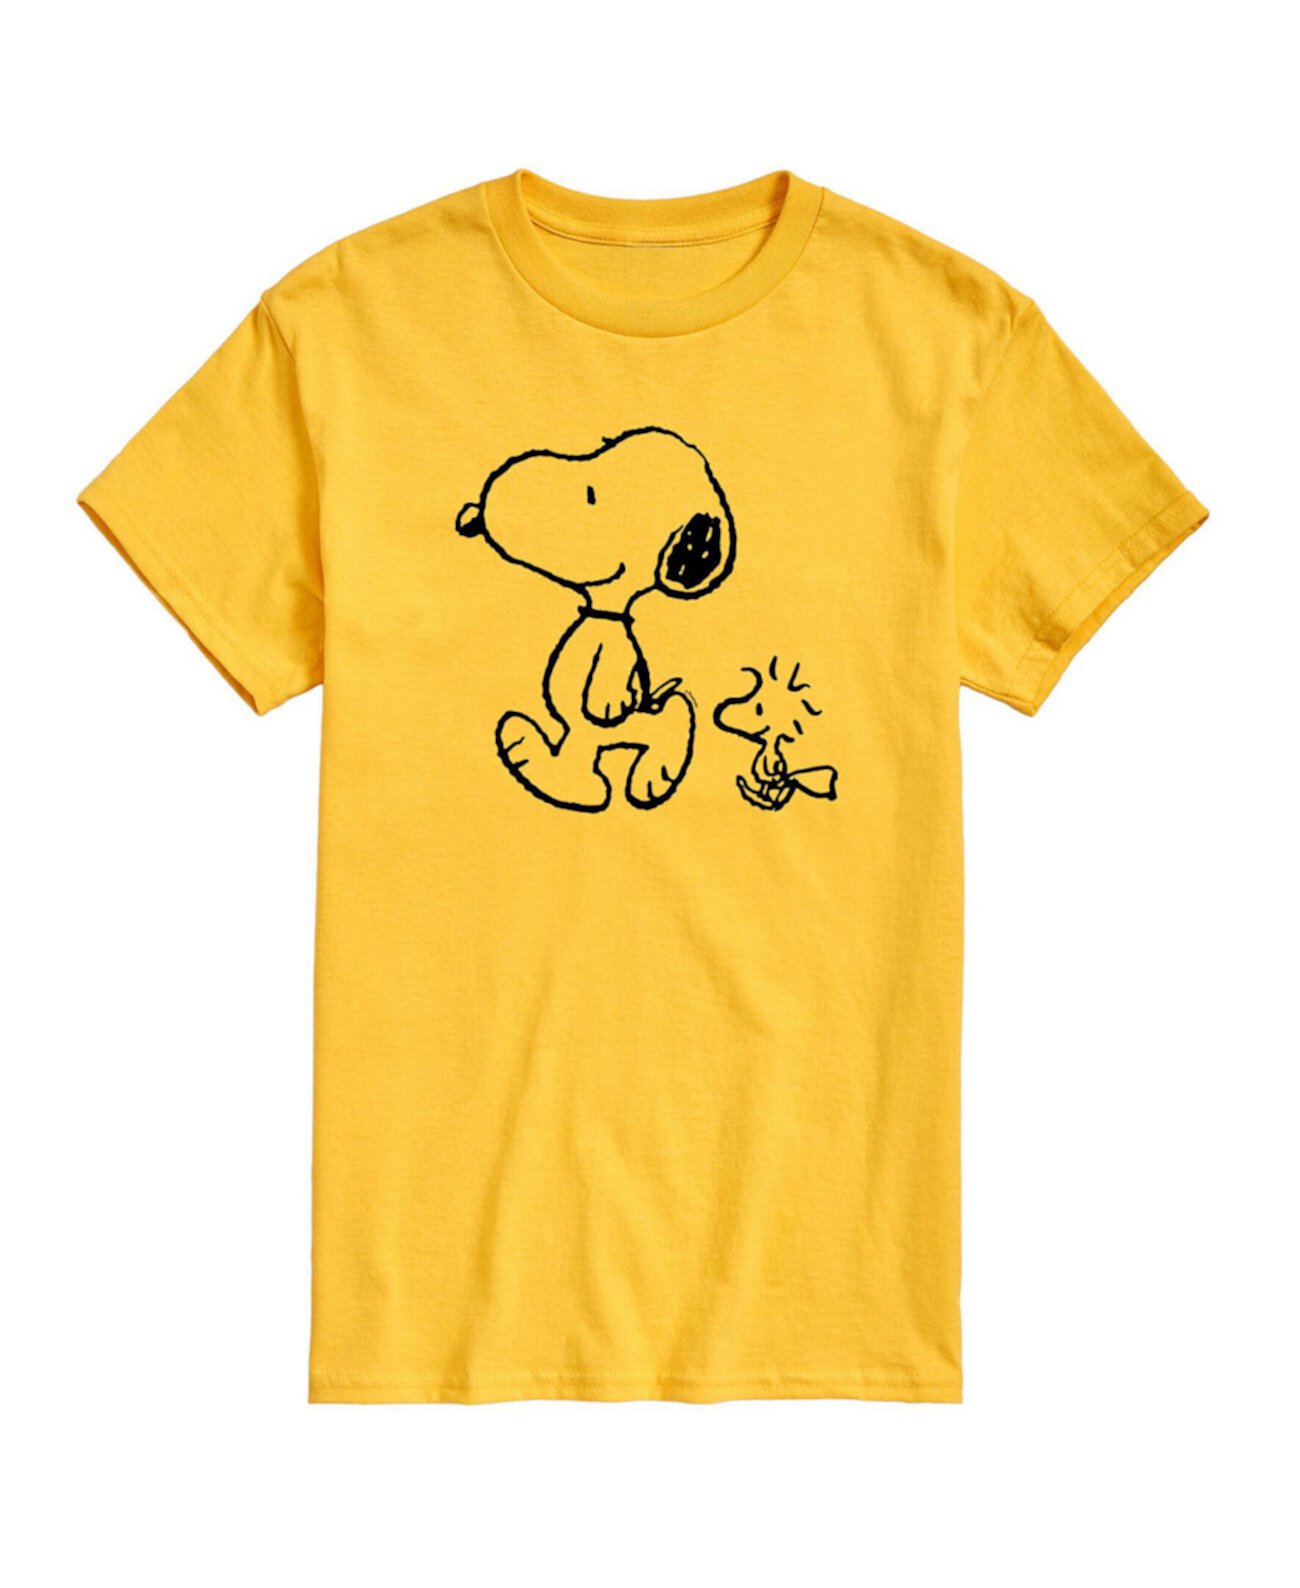 Мужская футболка Peanuts Snoopy Woodstock AIRWAVES